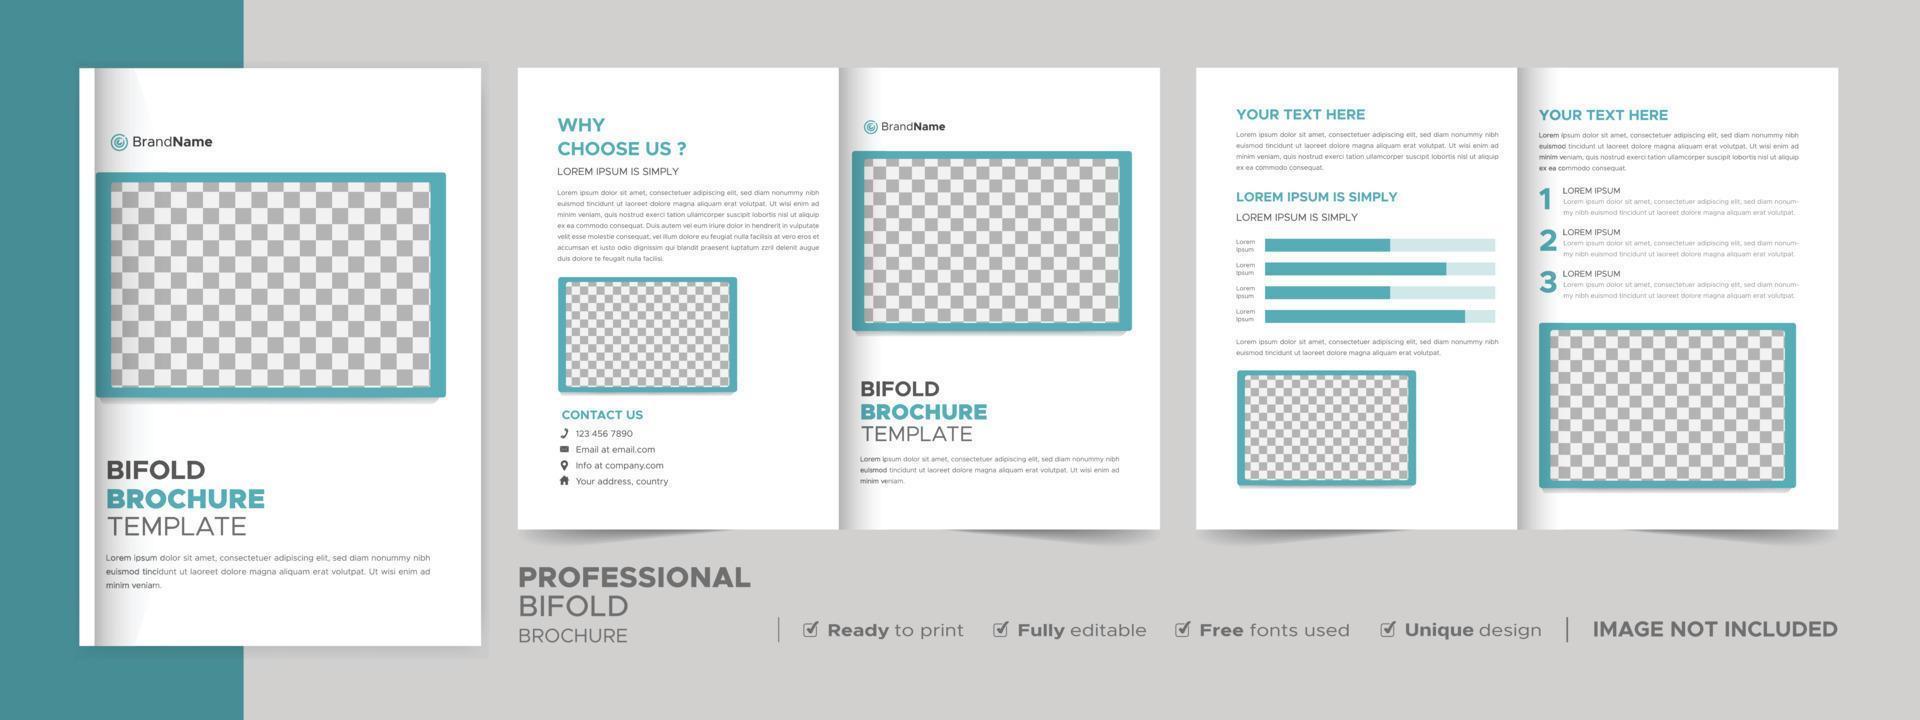 modello di progettazione di brochure bifold per la tua azienda, azienda, affari, pubblicità, marketing, agenzia e attività su Internet. vettore